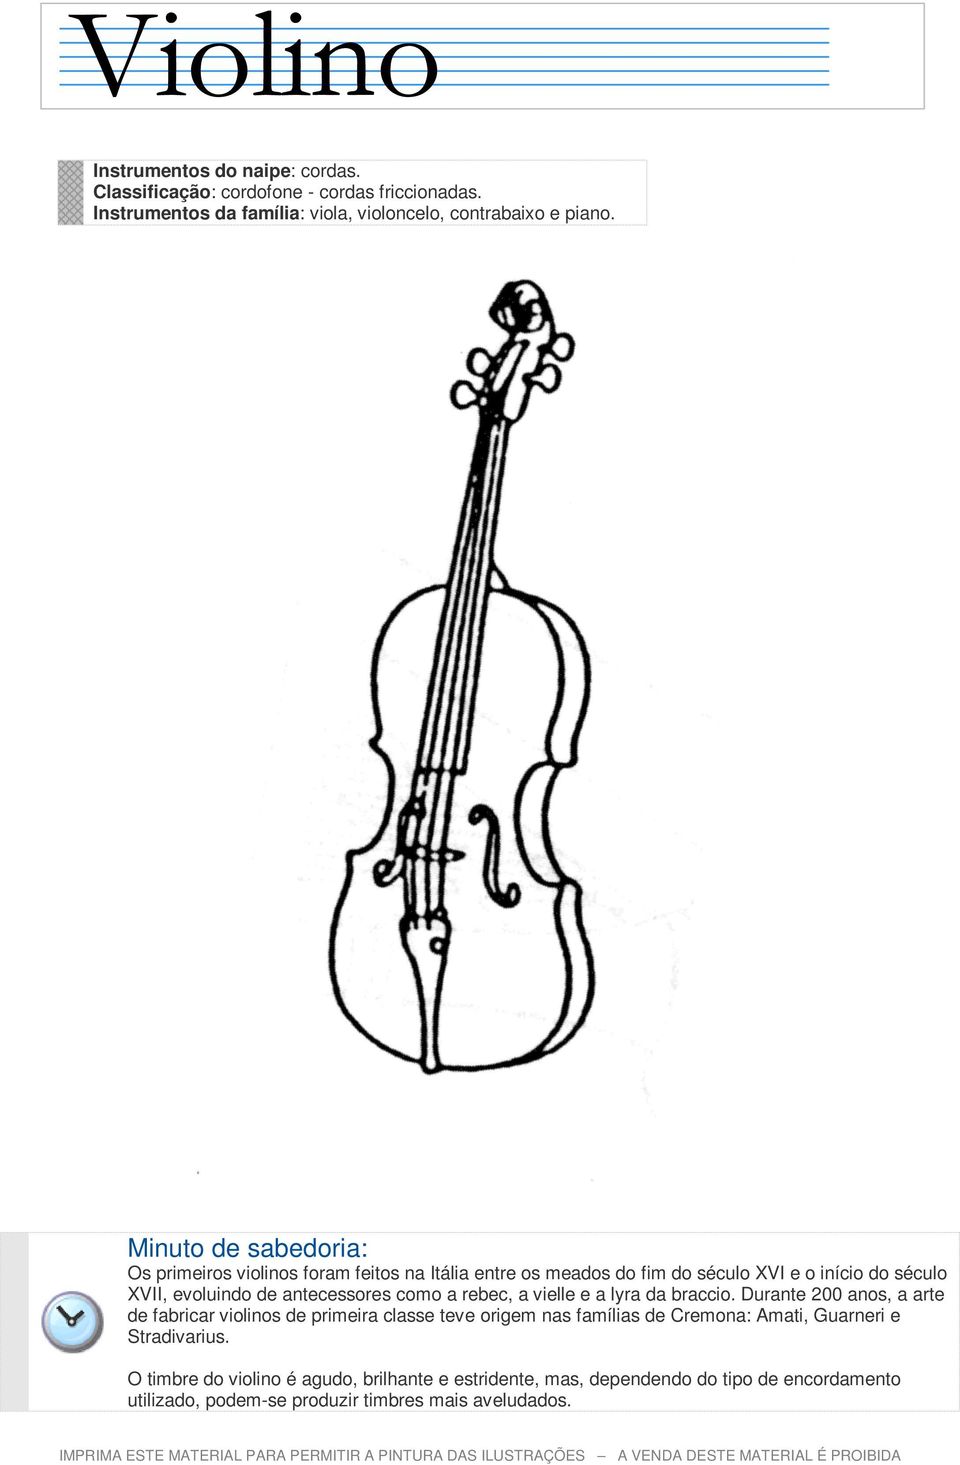 Os primeiros violinos foram feitos na Itália entre os meados do fim do século XVI e o início do século XVII, evoluindo de antecessores como a rebec, a